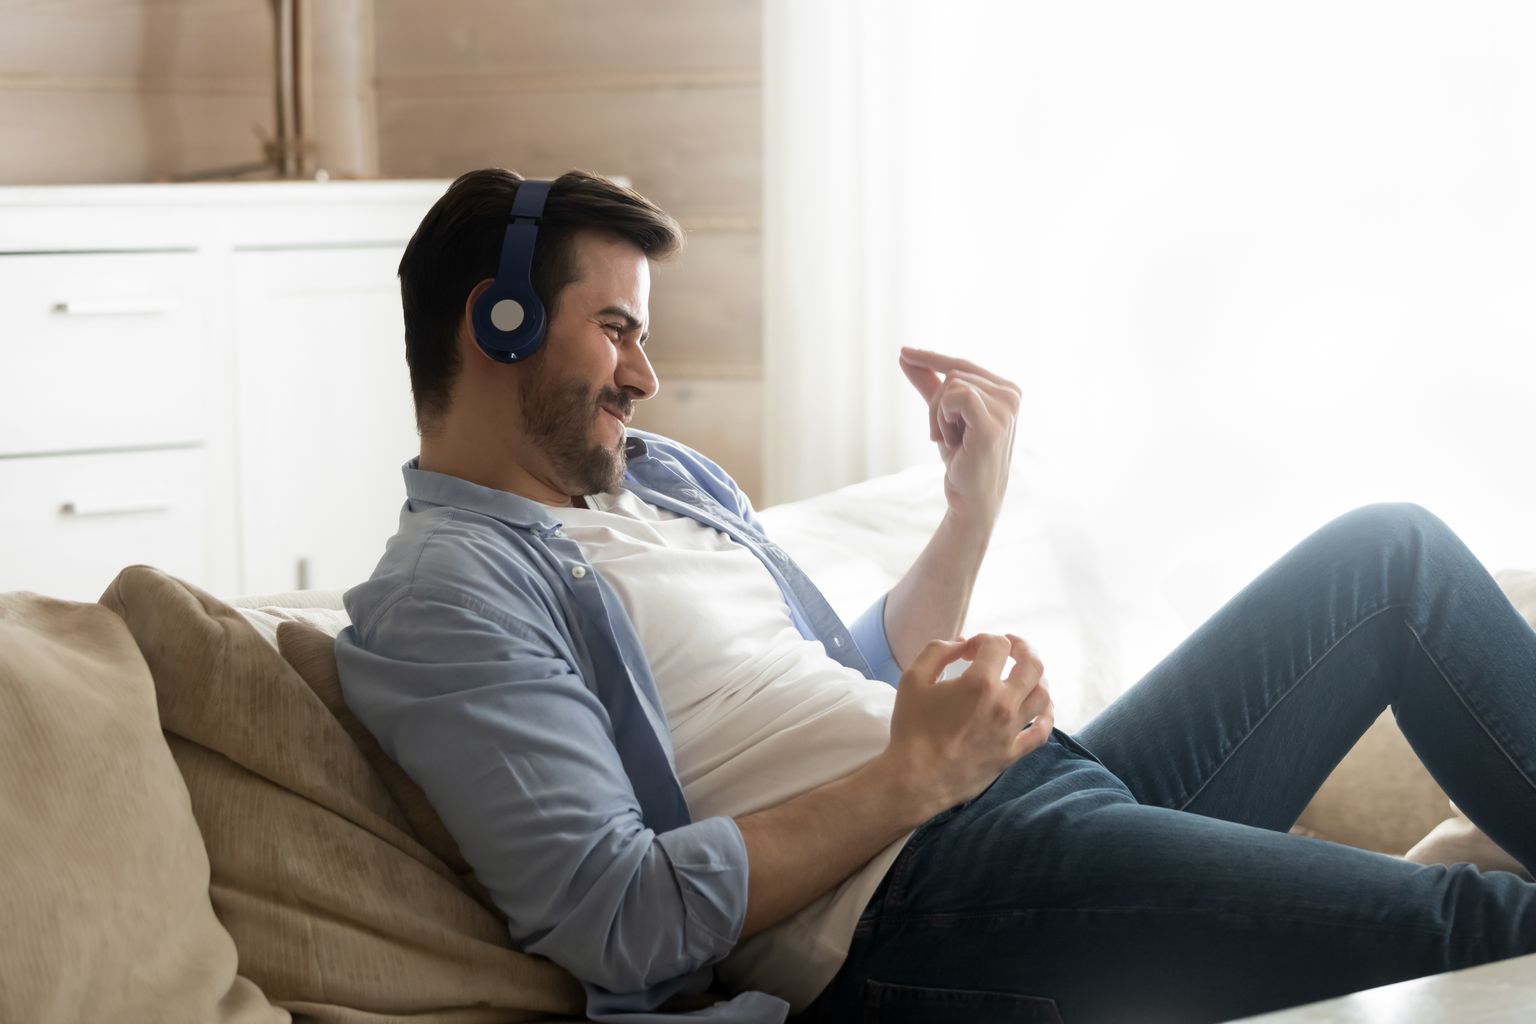 Pidev valju muusika kuulamine panustab kuulmislanguse tekkesse.